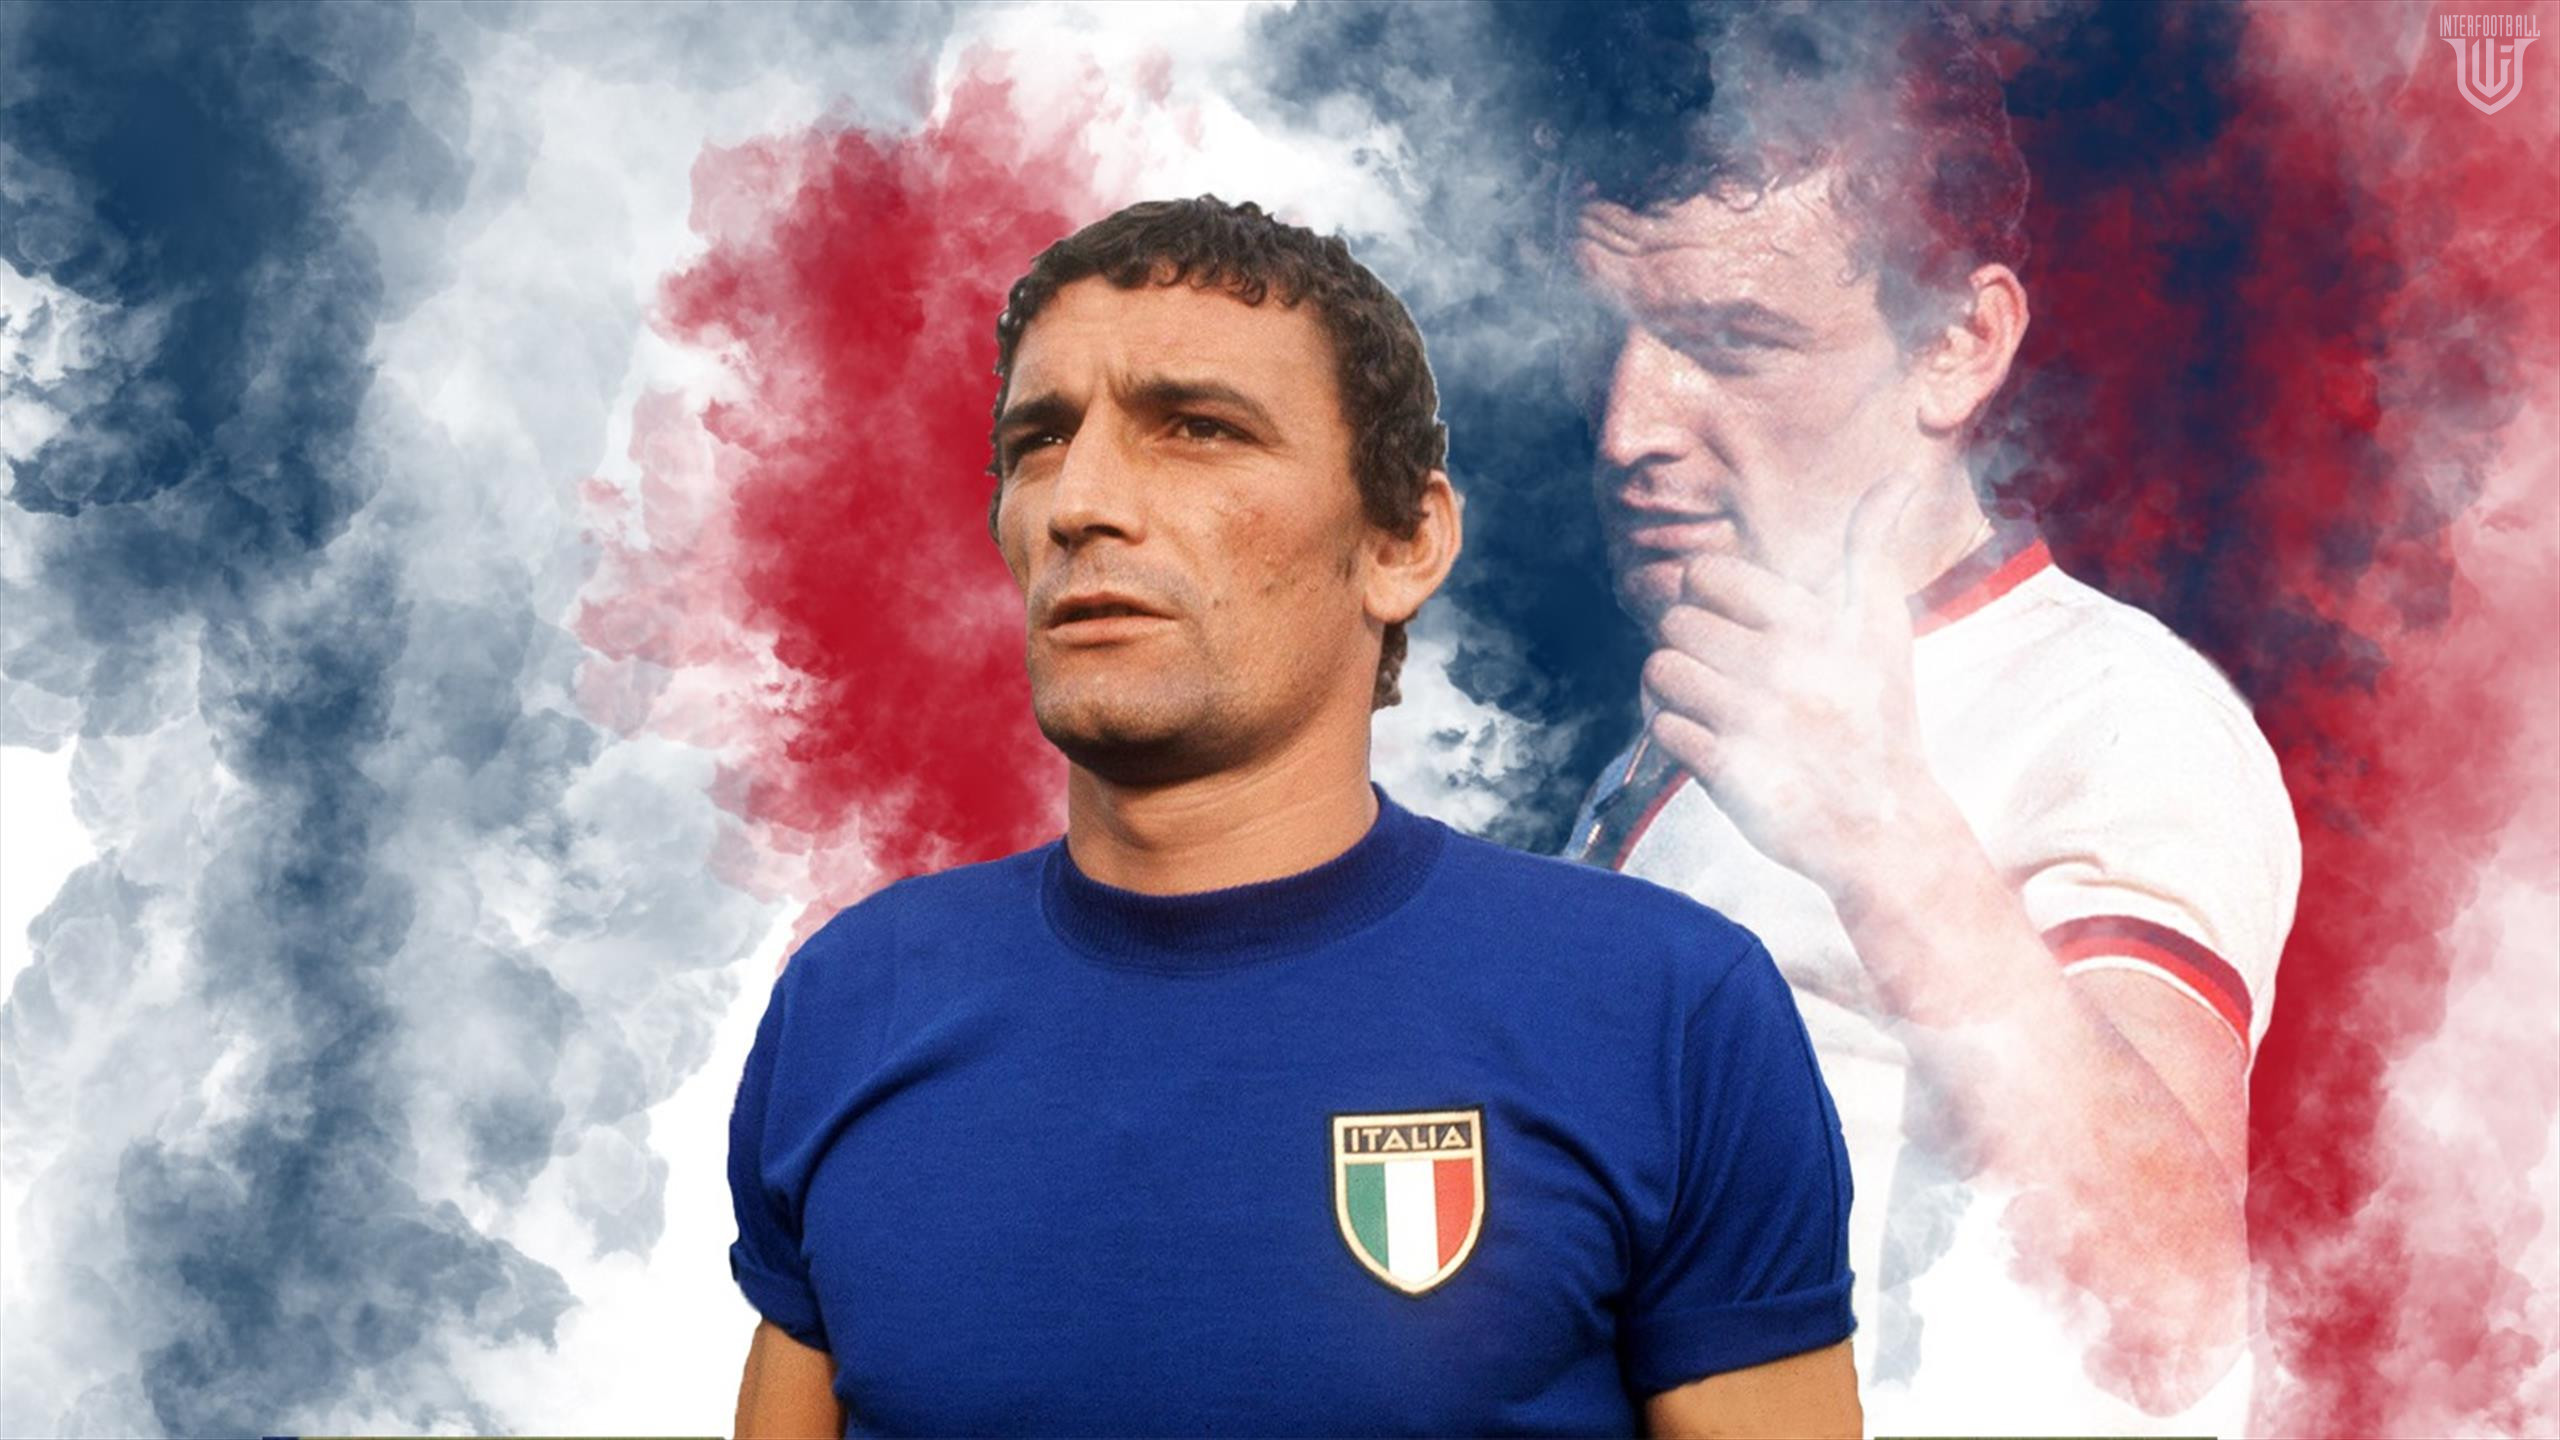 Մահացել է իտալական ֆուտբոլի լեգենդ Լուիջի Ռիվան